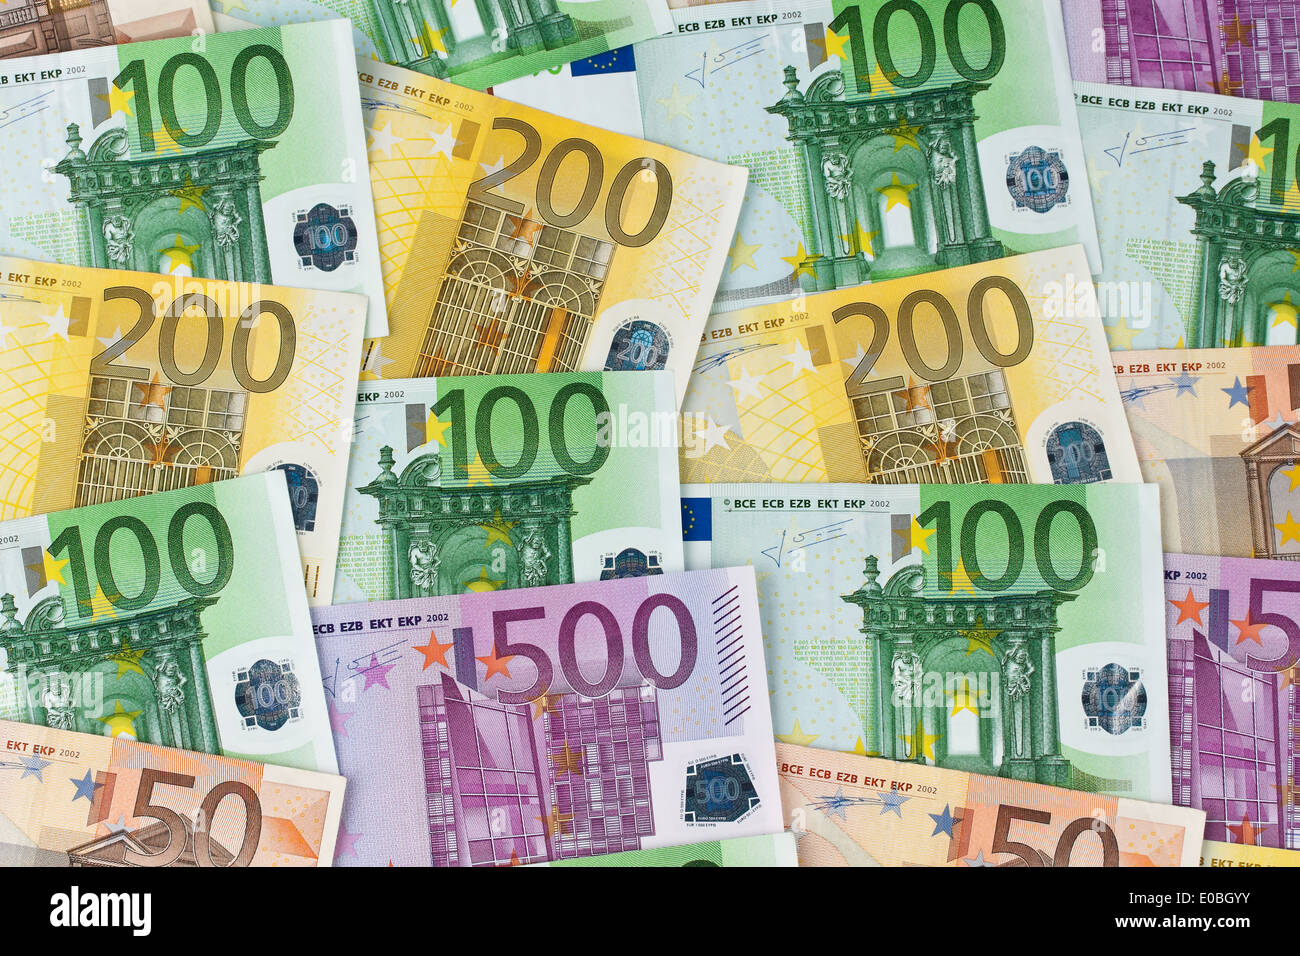 A lot of euro of bank notes of the European Union. Bank notes as a background, Viele Euro Geldscheine der Europaeischen Union. B Stock Photo